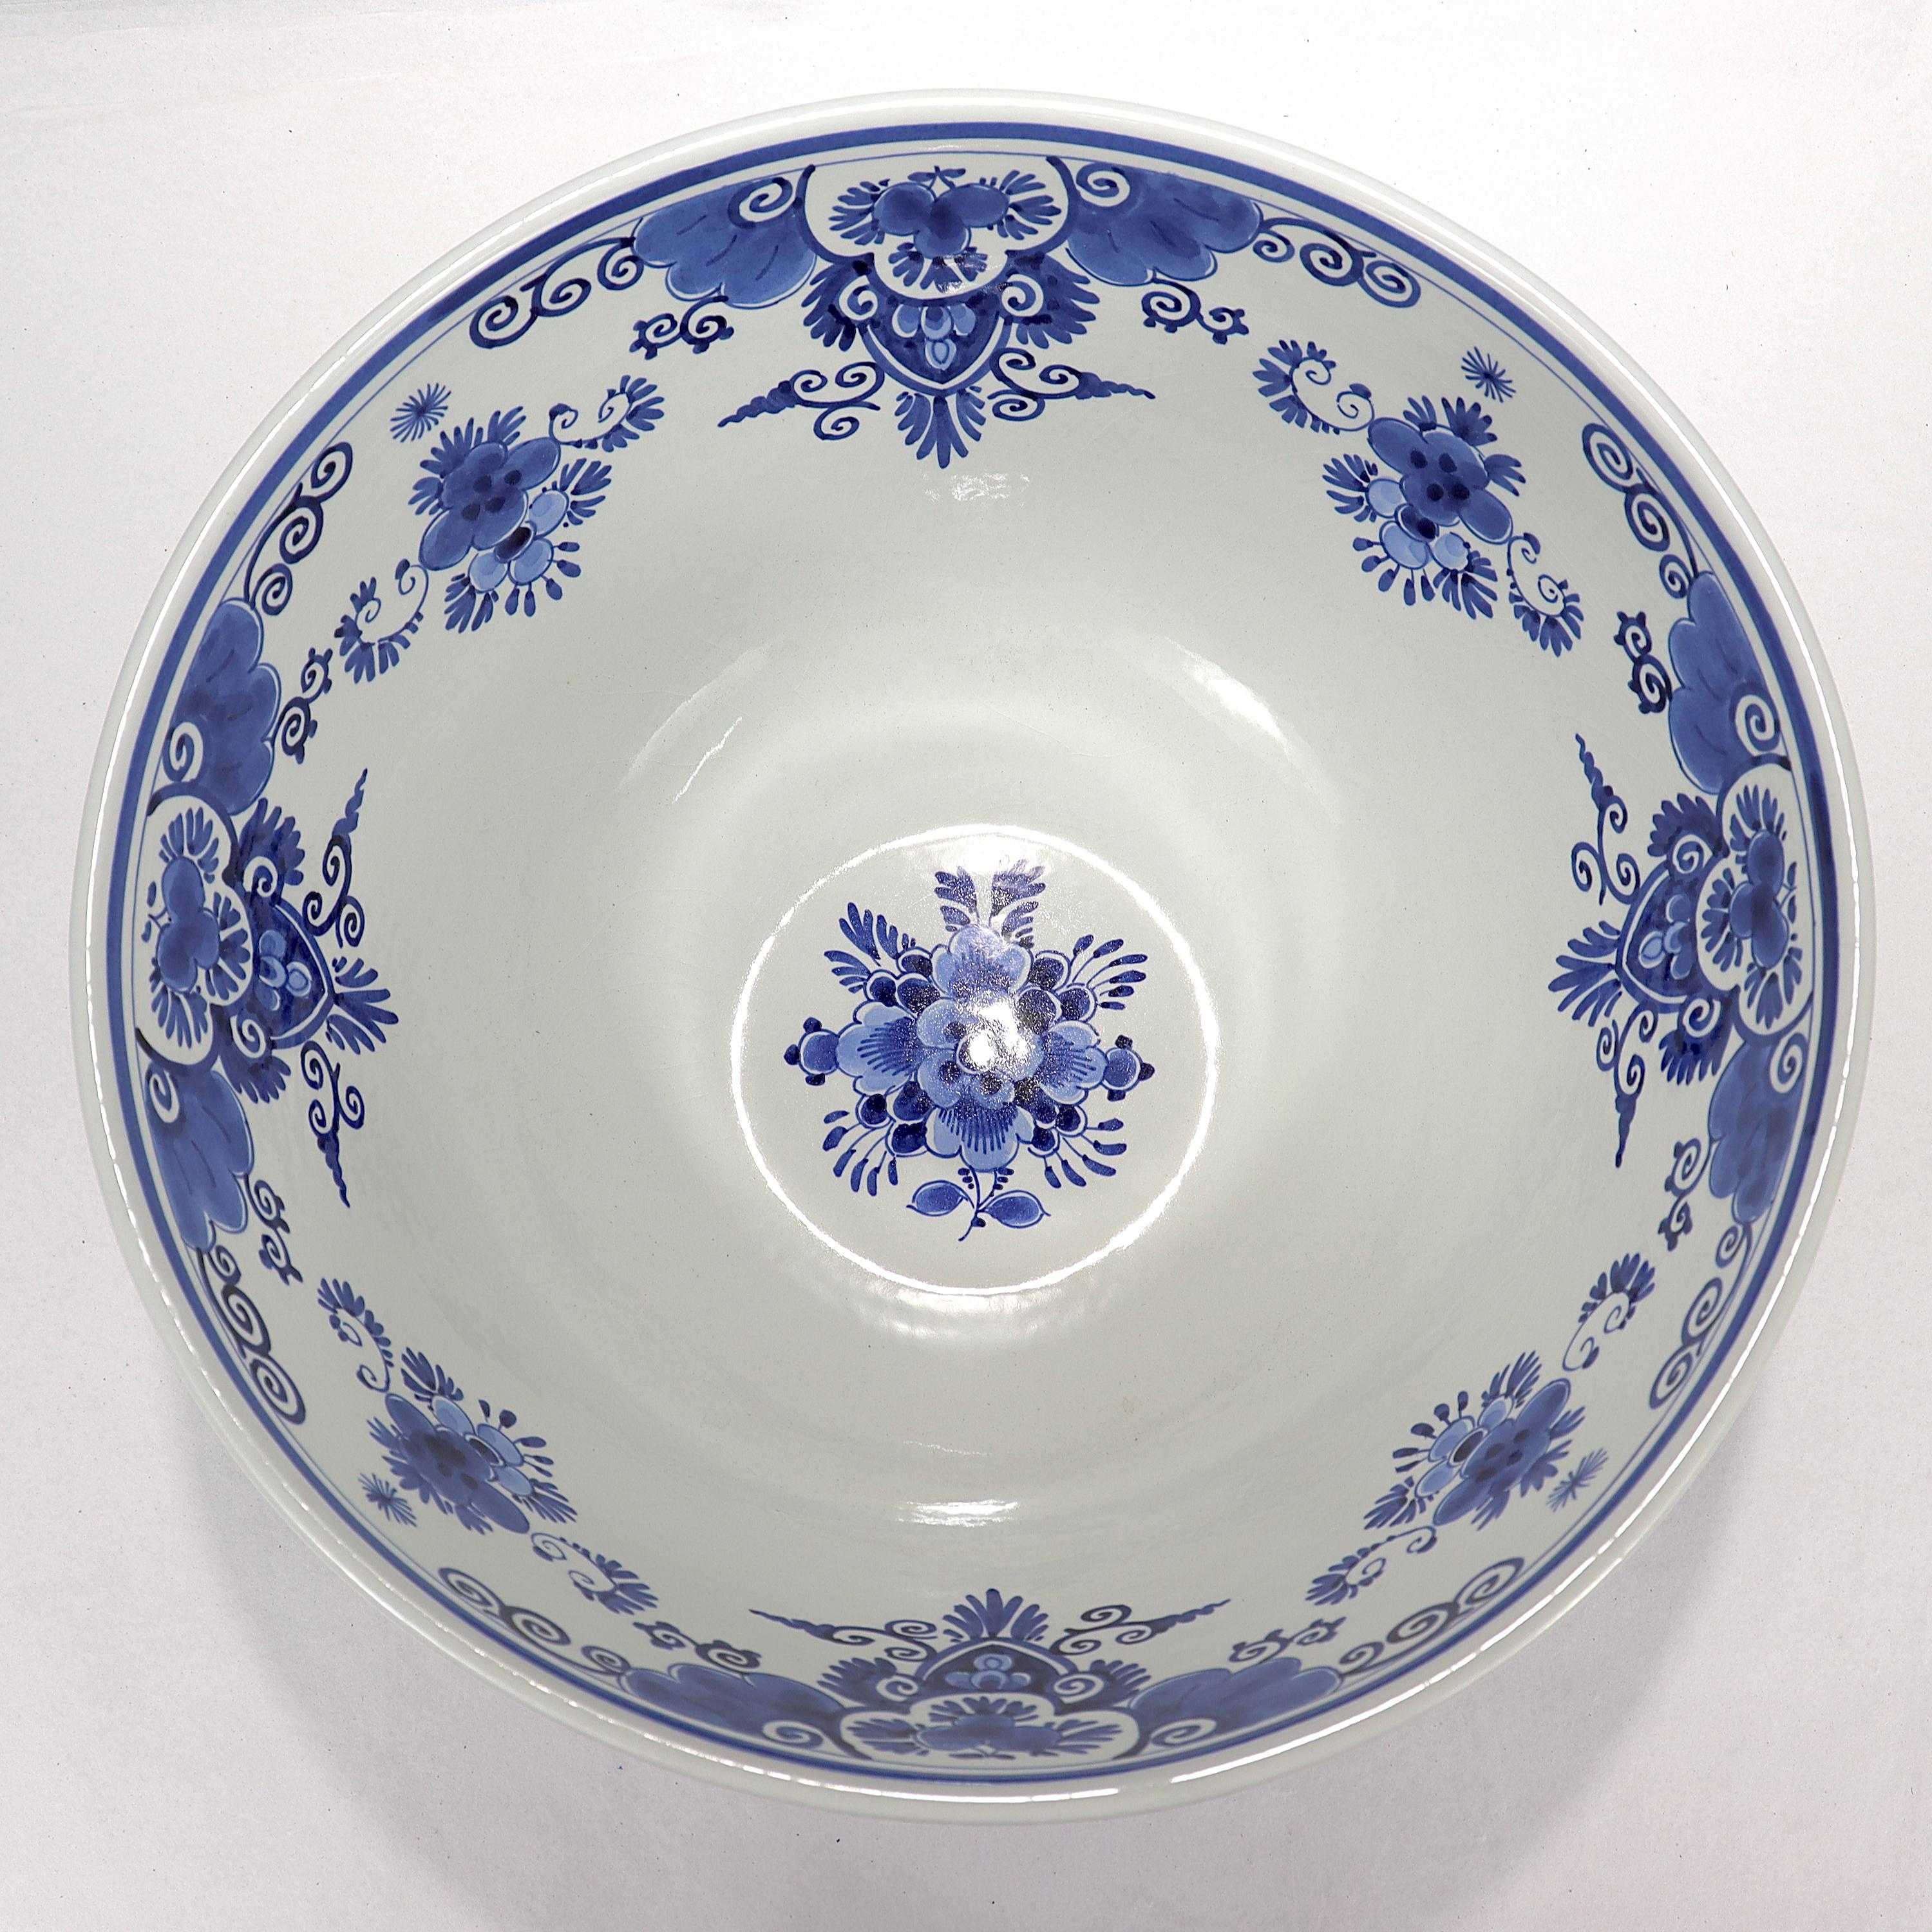 Vintage De Porceleyne Fles Dutch Delft Blue & White Pottery Punch Bowl 2